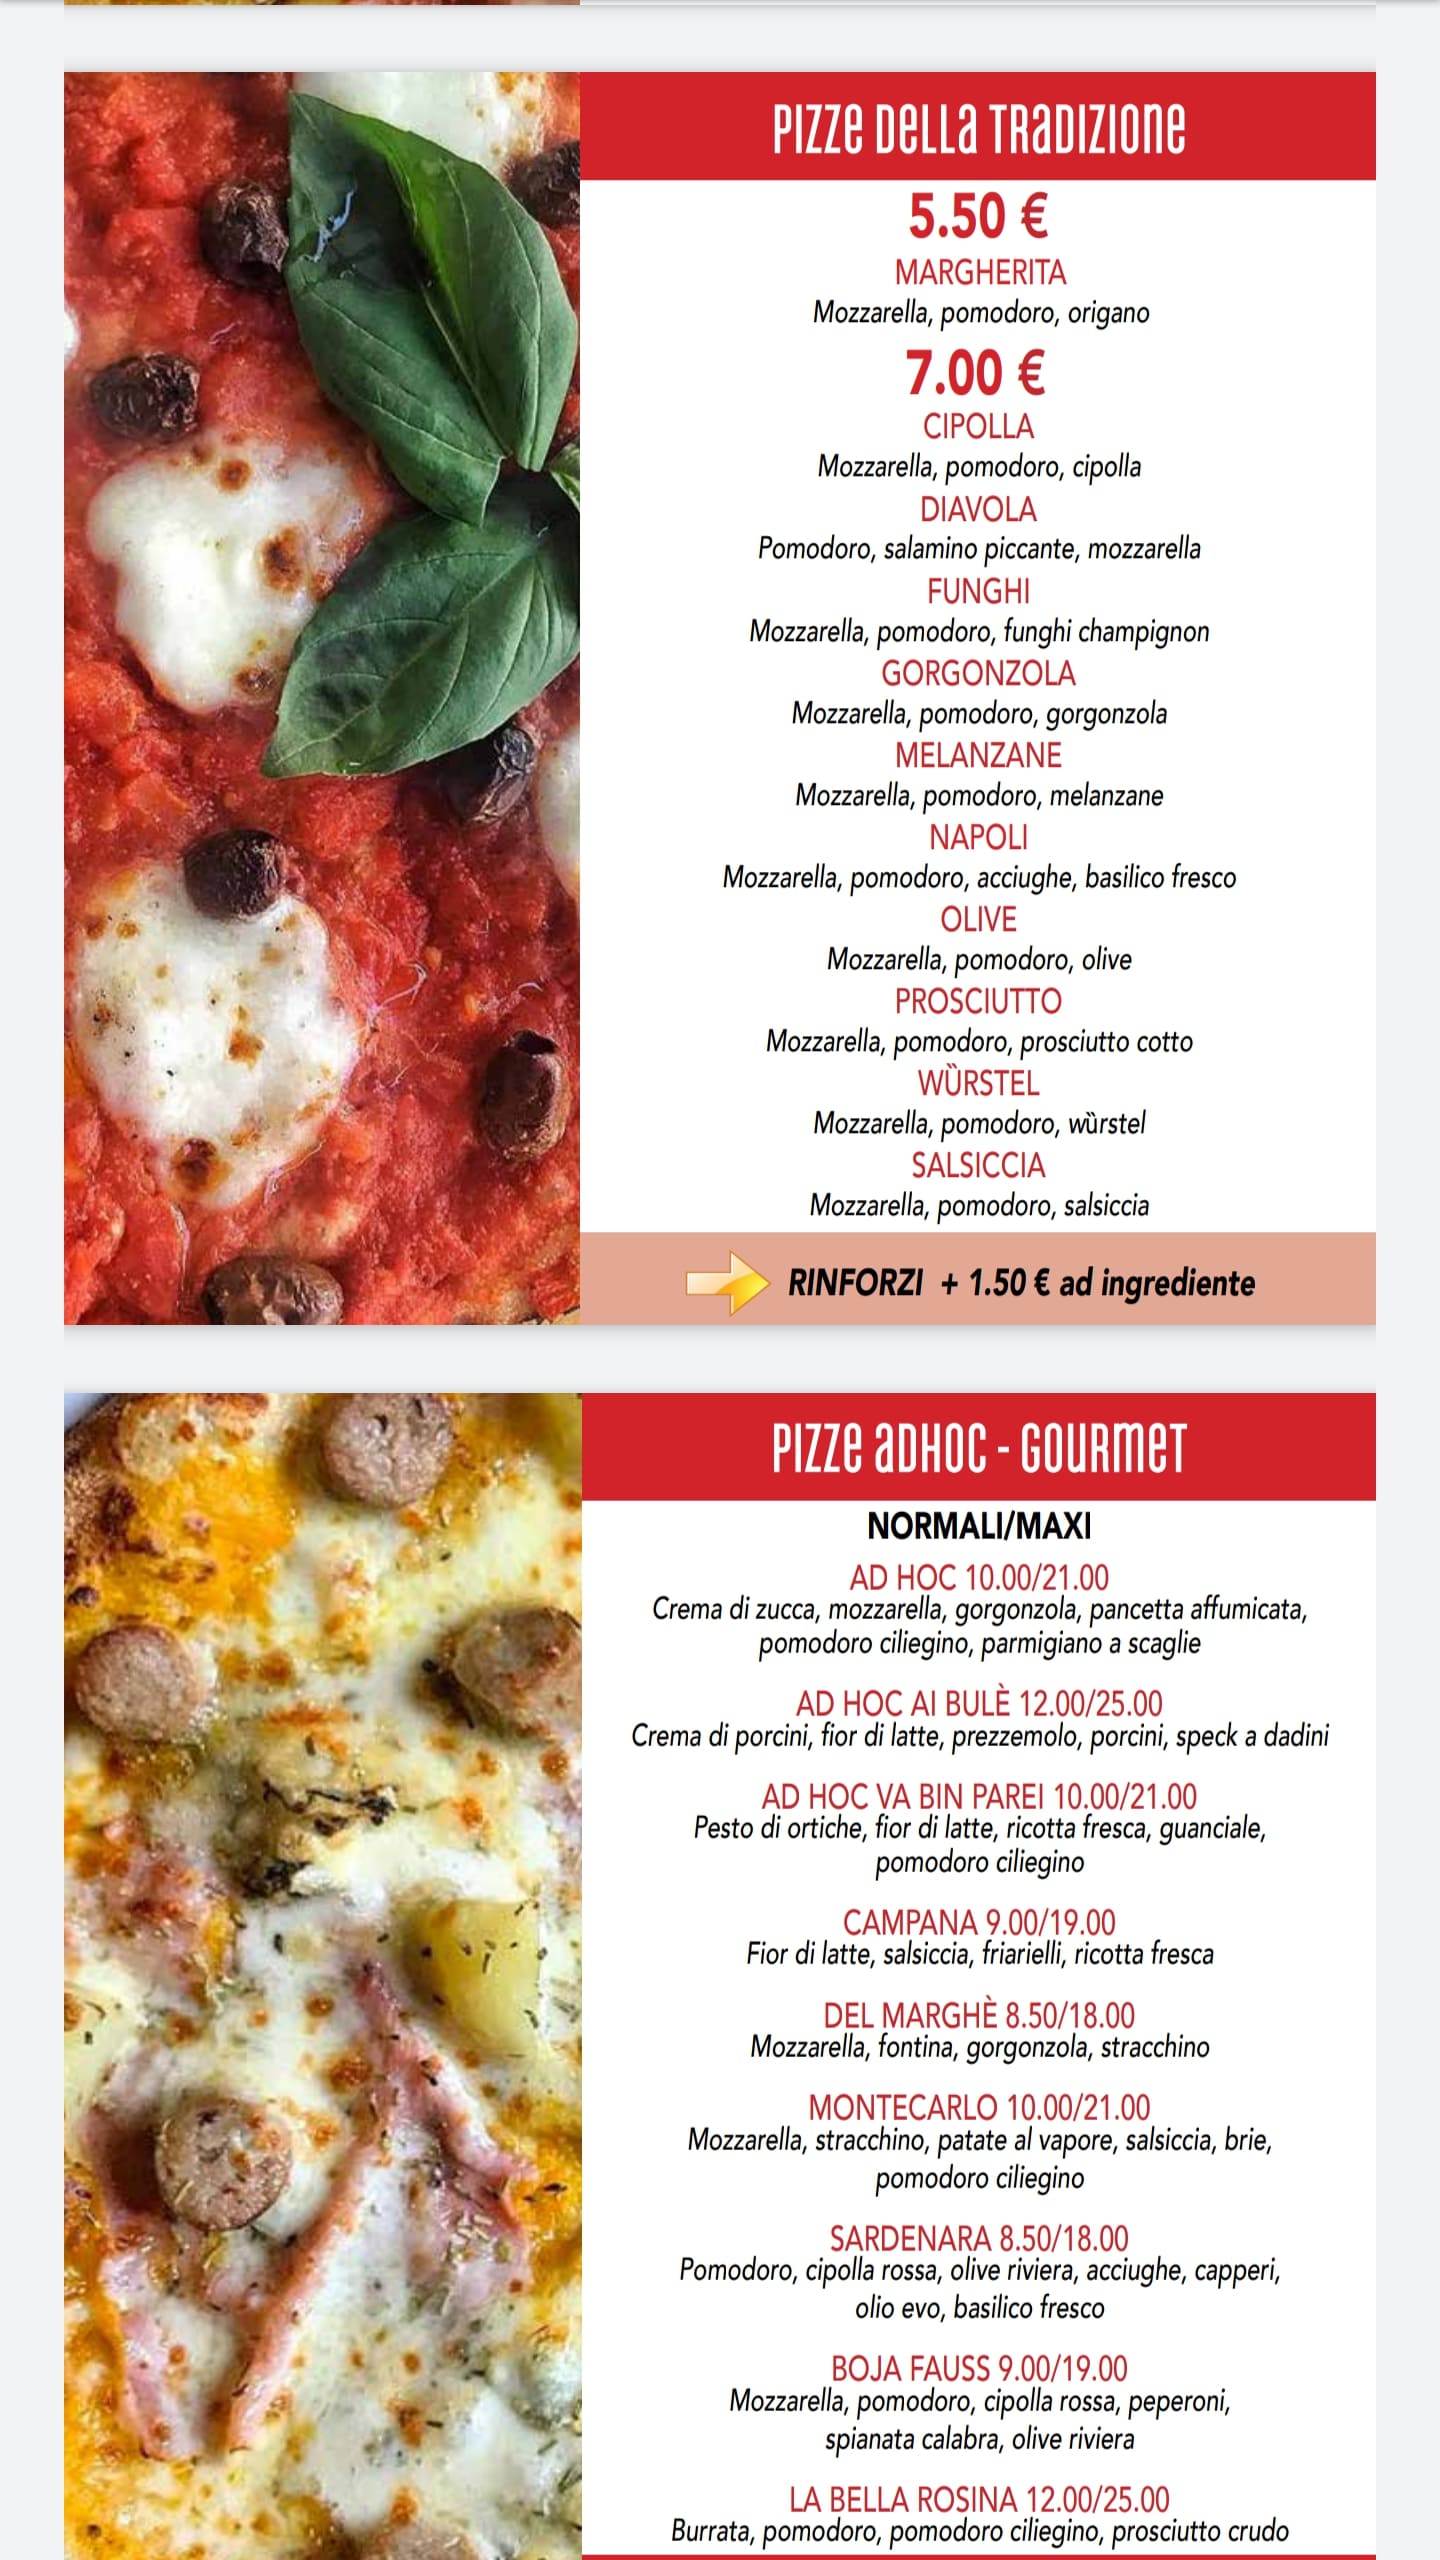 Pizza Ad hoc a Torino: menu